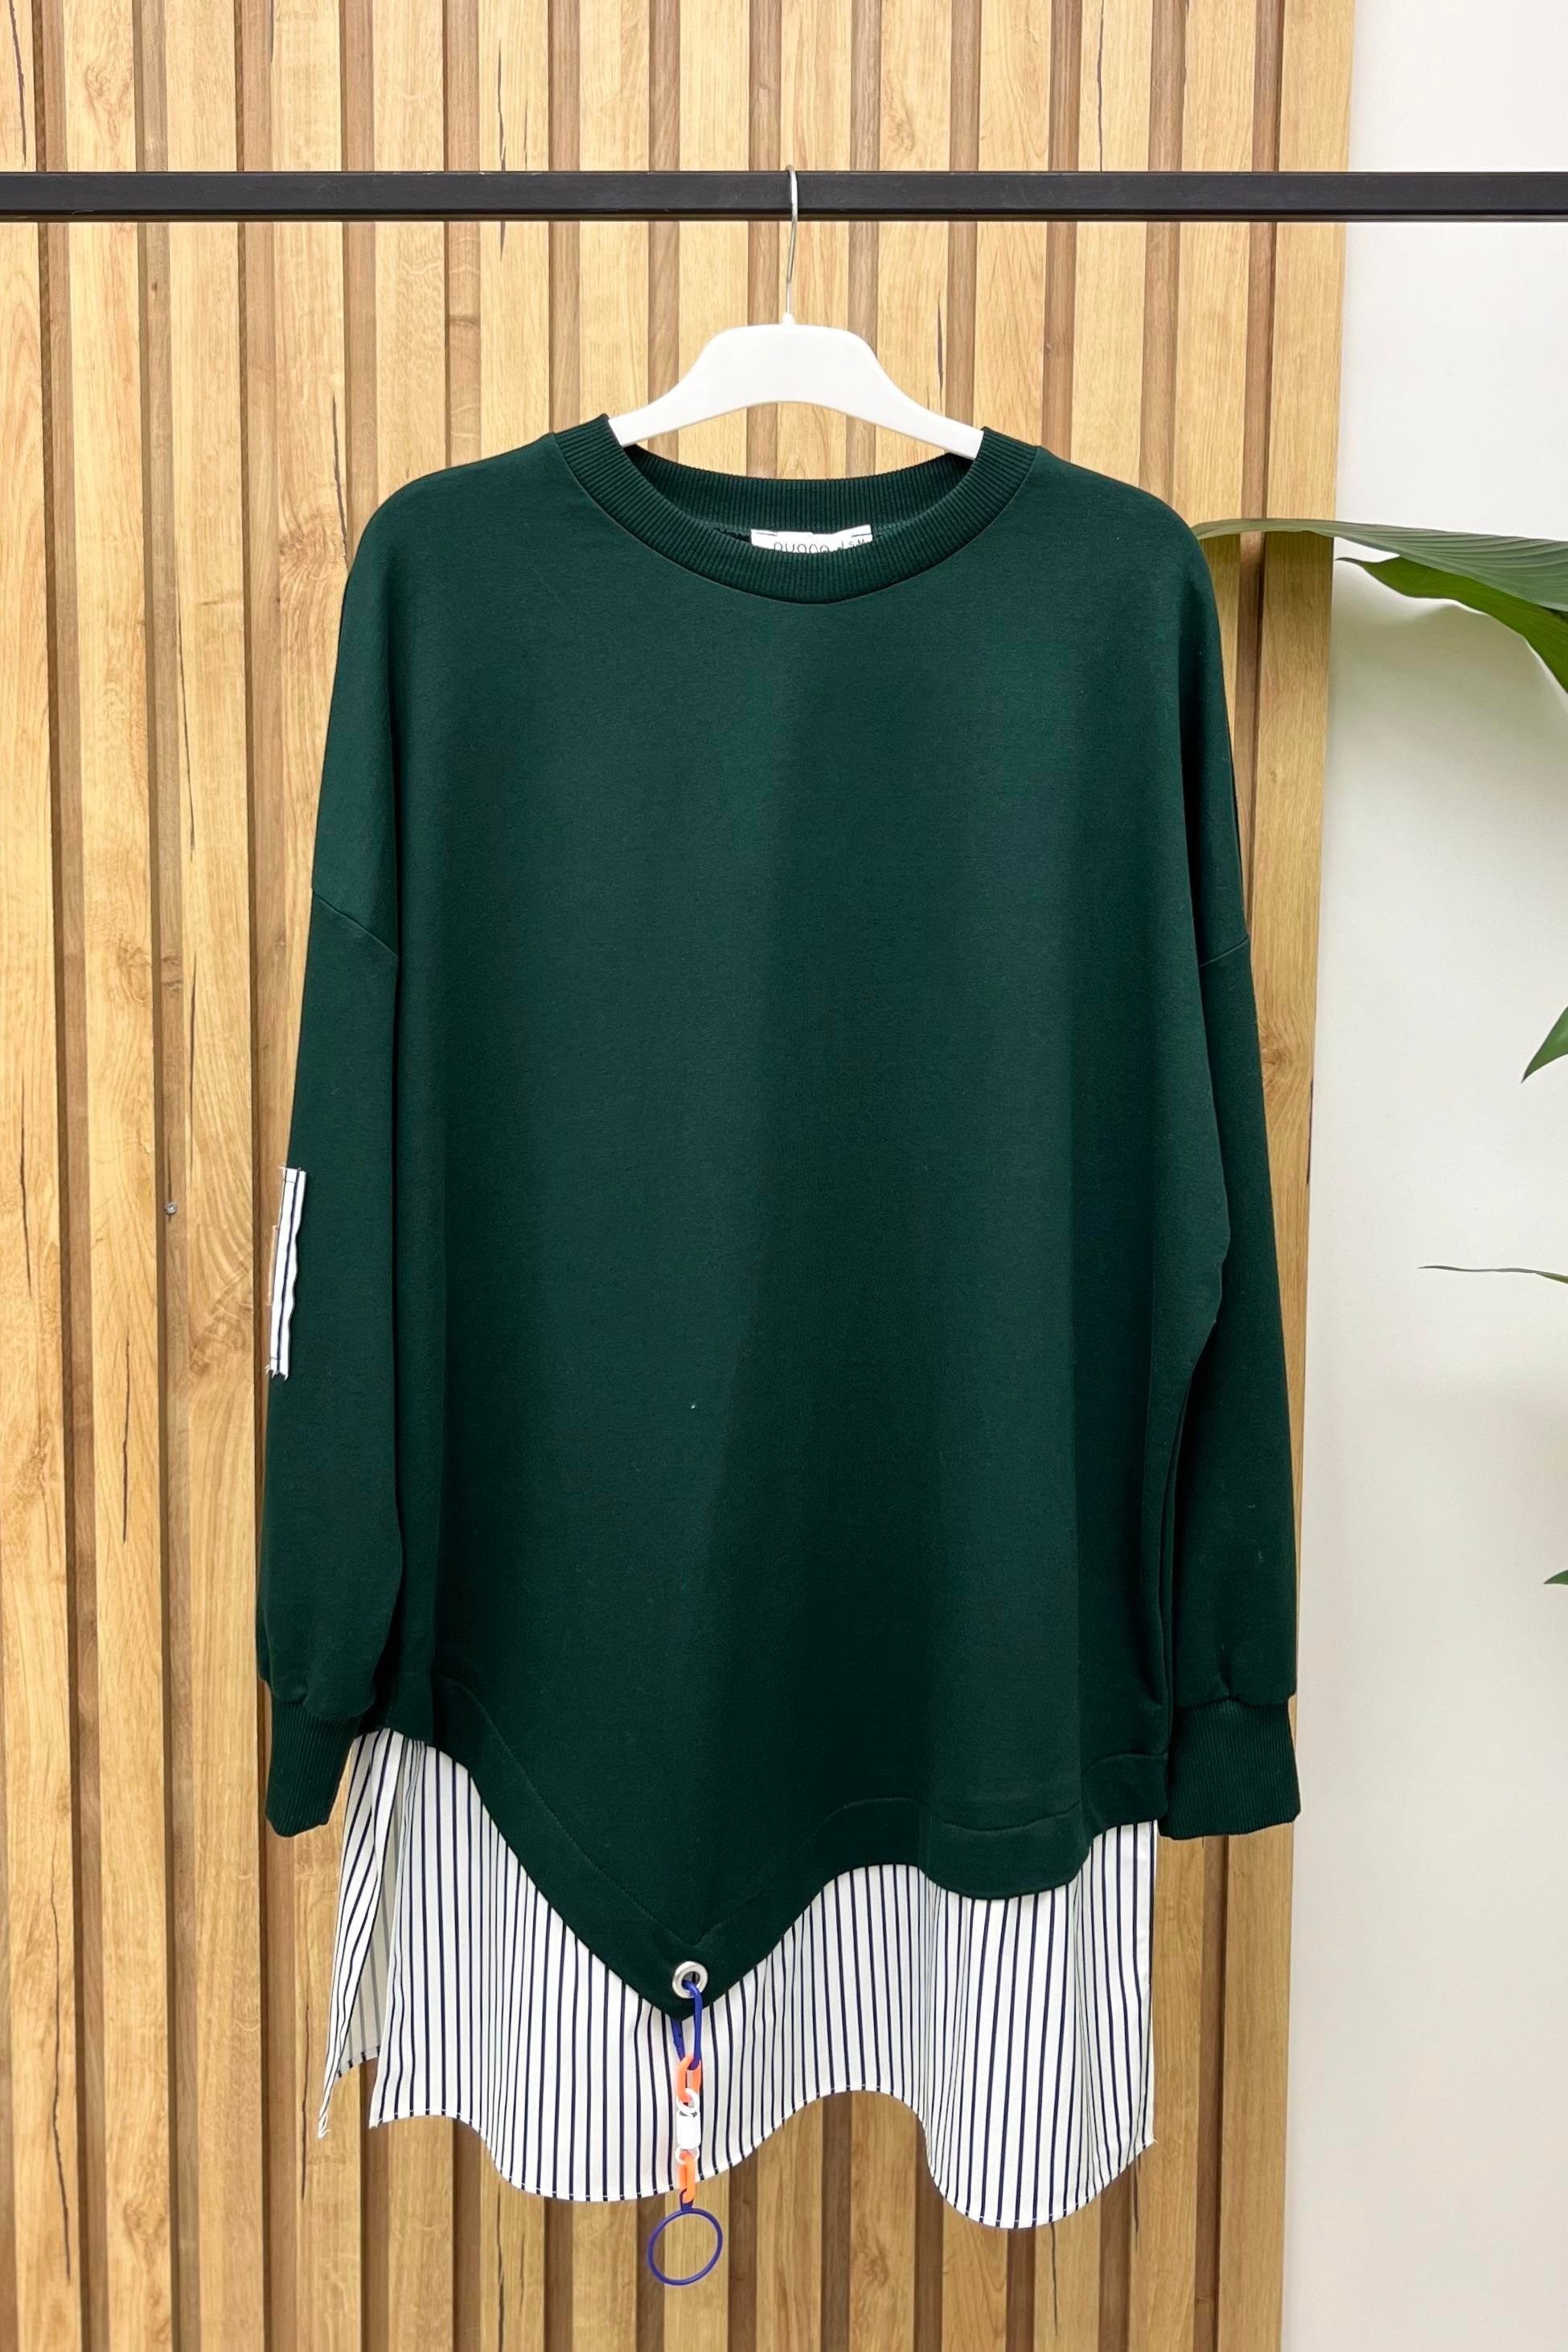 Eteği Çizgi Detay Tunik 10392 - Koyu Yeşil - Bilen Giyim